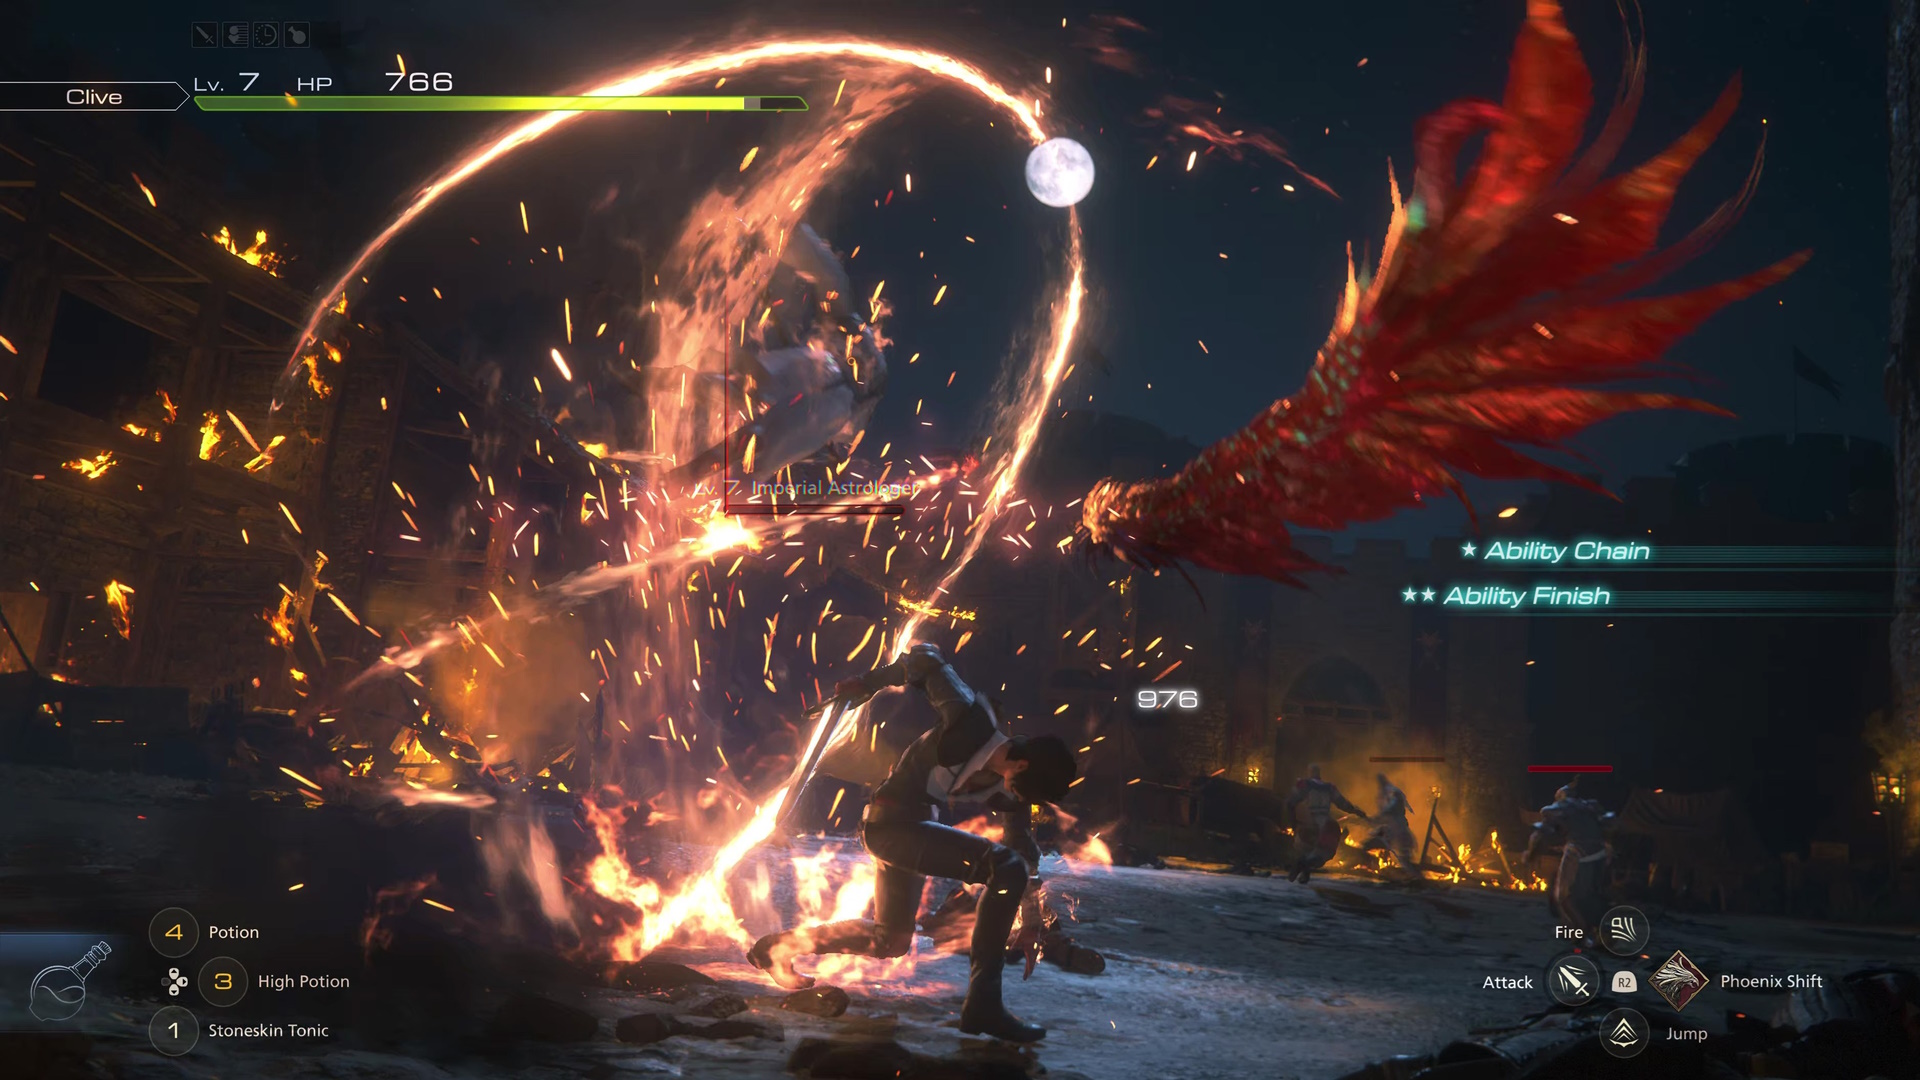 Captura de pantalla de Final Fantasy 16 muestra el combate con Clive y muchos elementos de IU en una noche oscura contra soldados